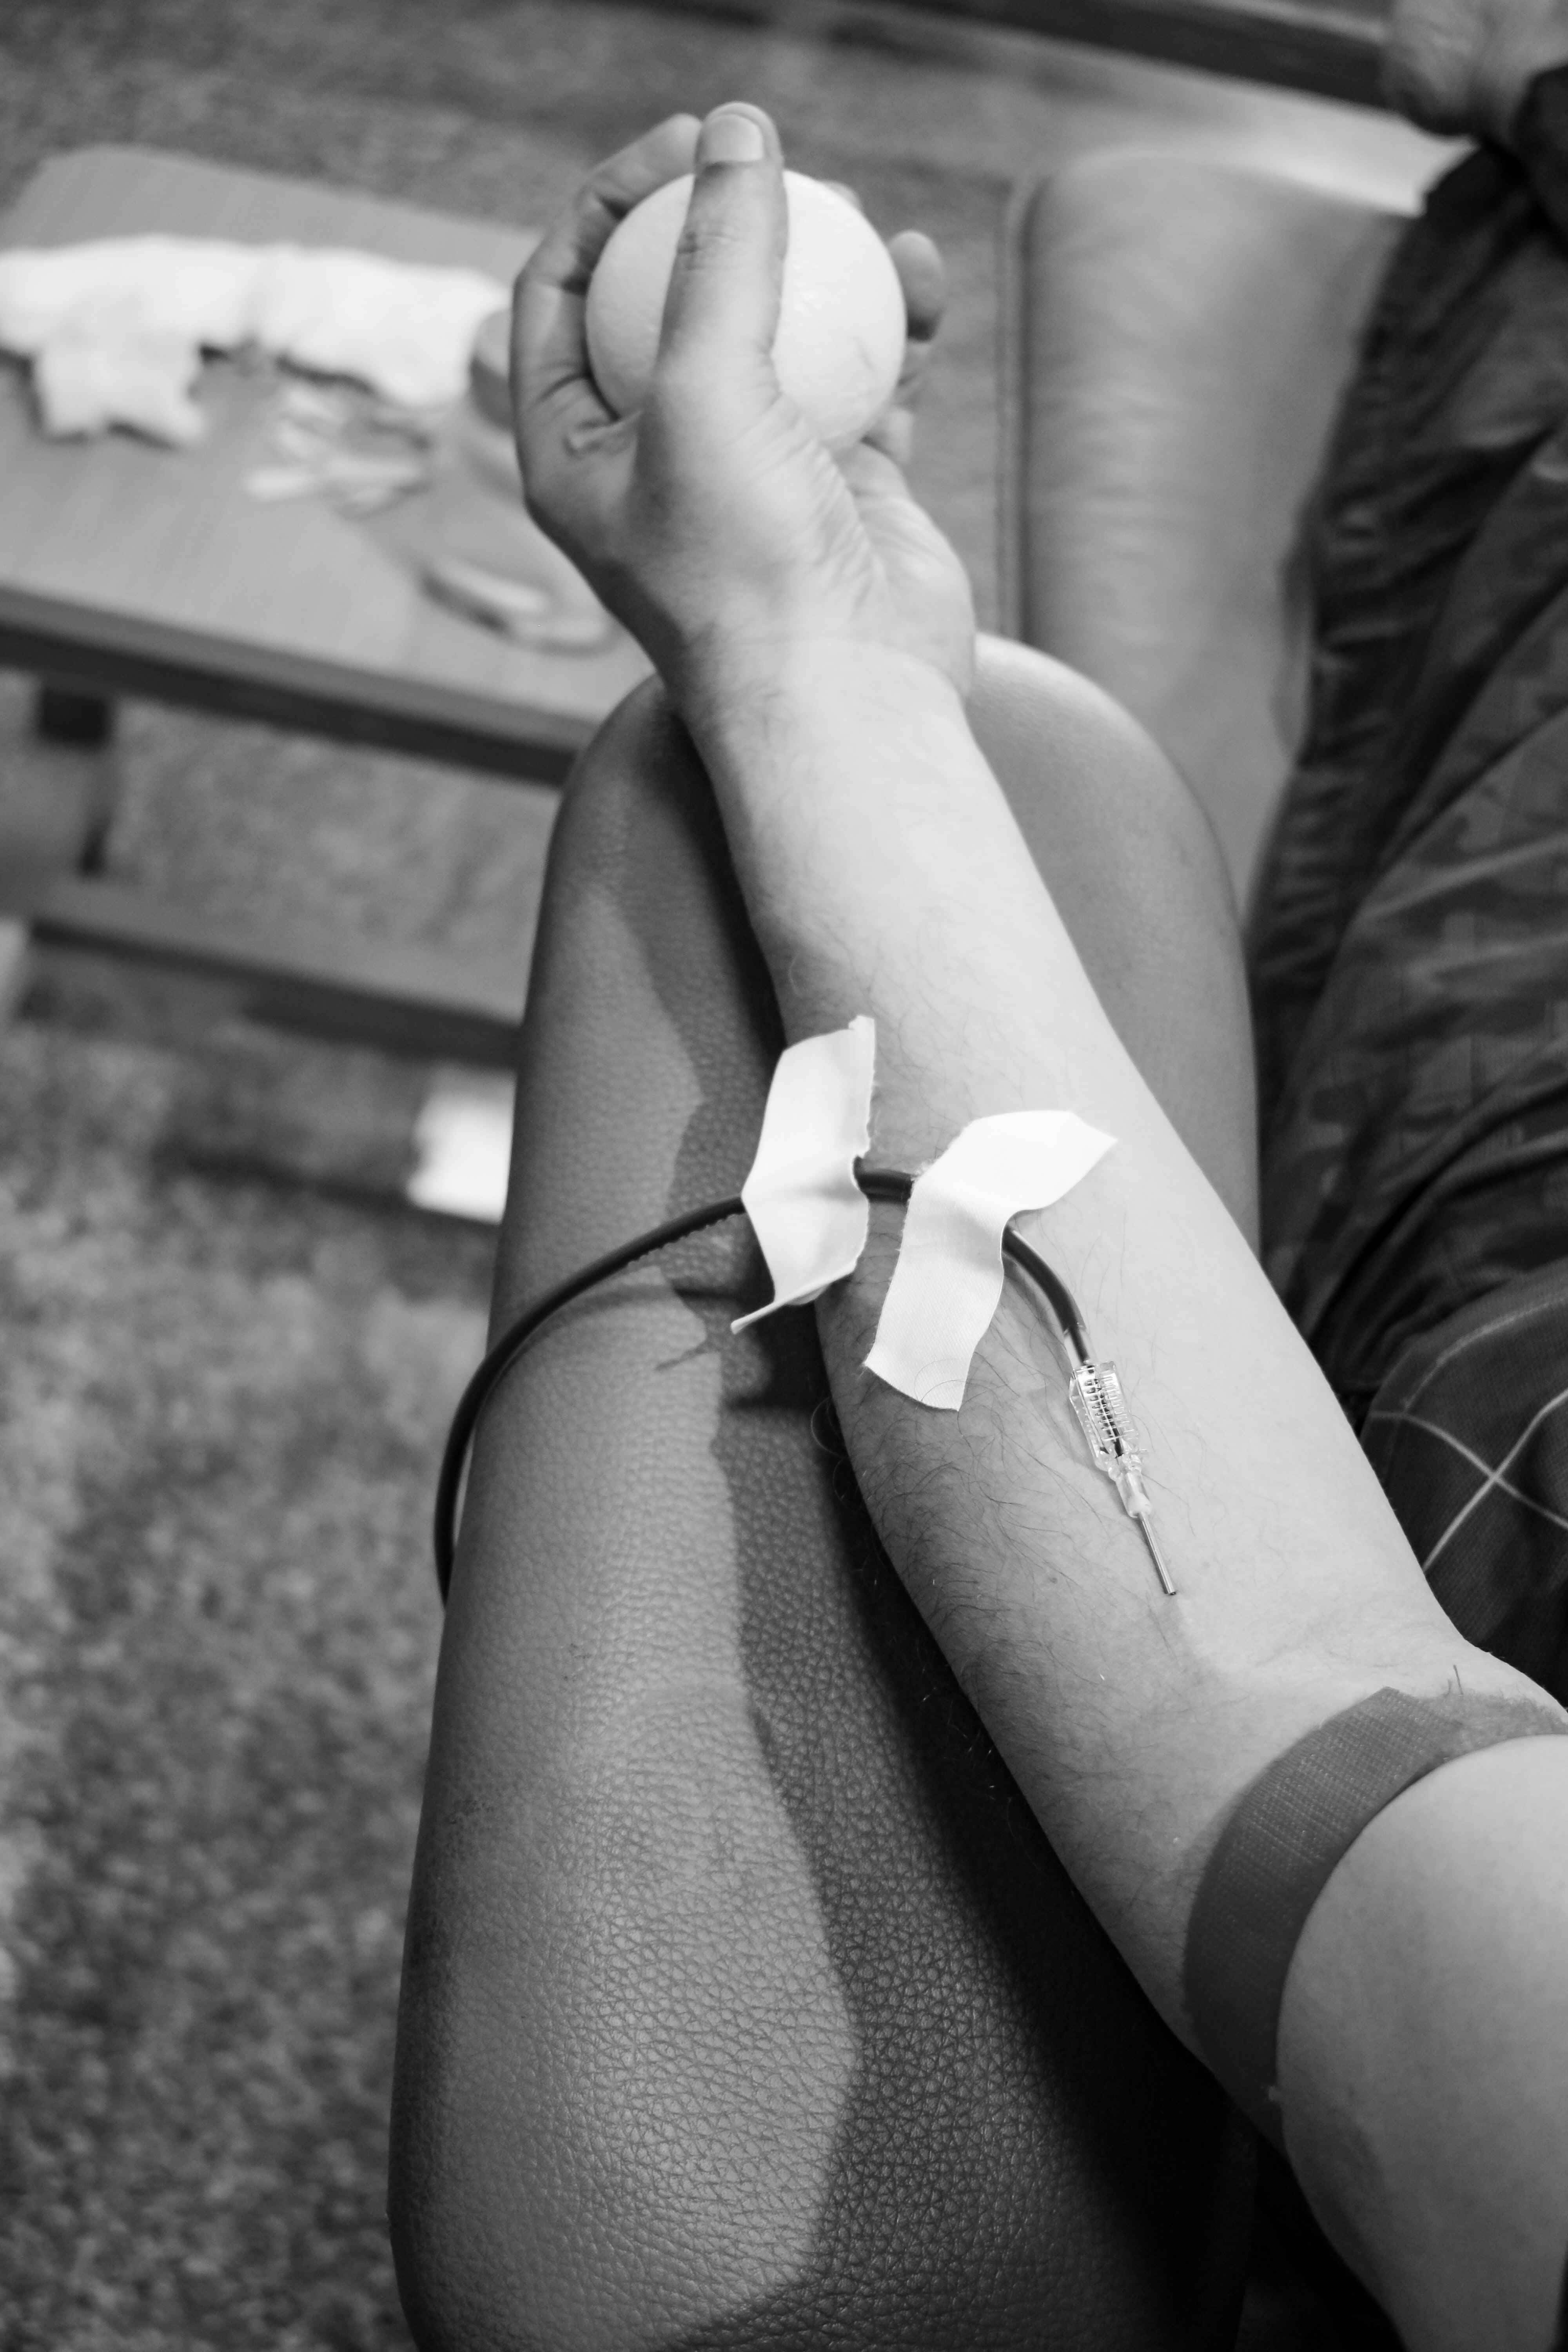 Donaciones para la vida; Parte I: No son obstáculos; es garantizar sangre sana